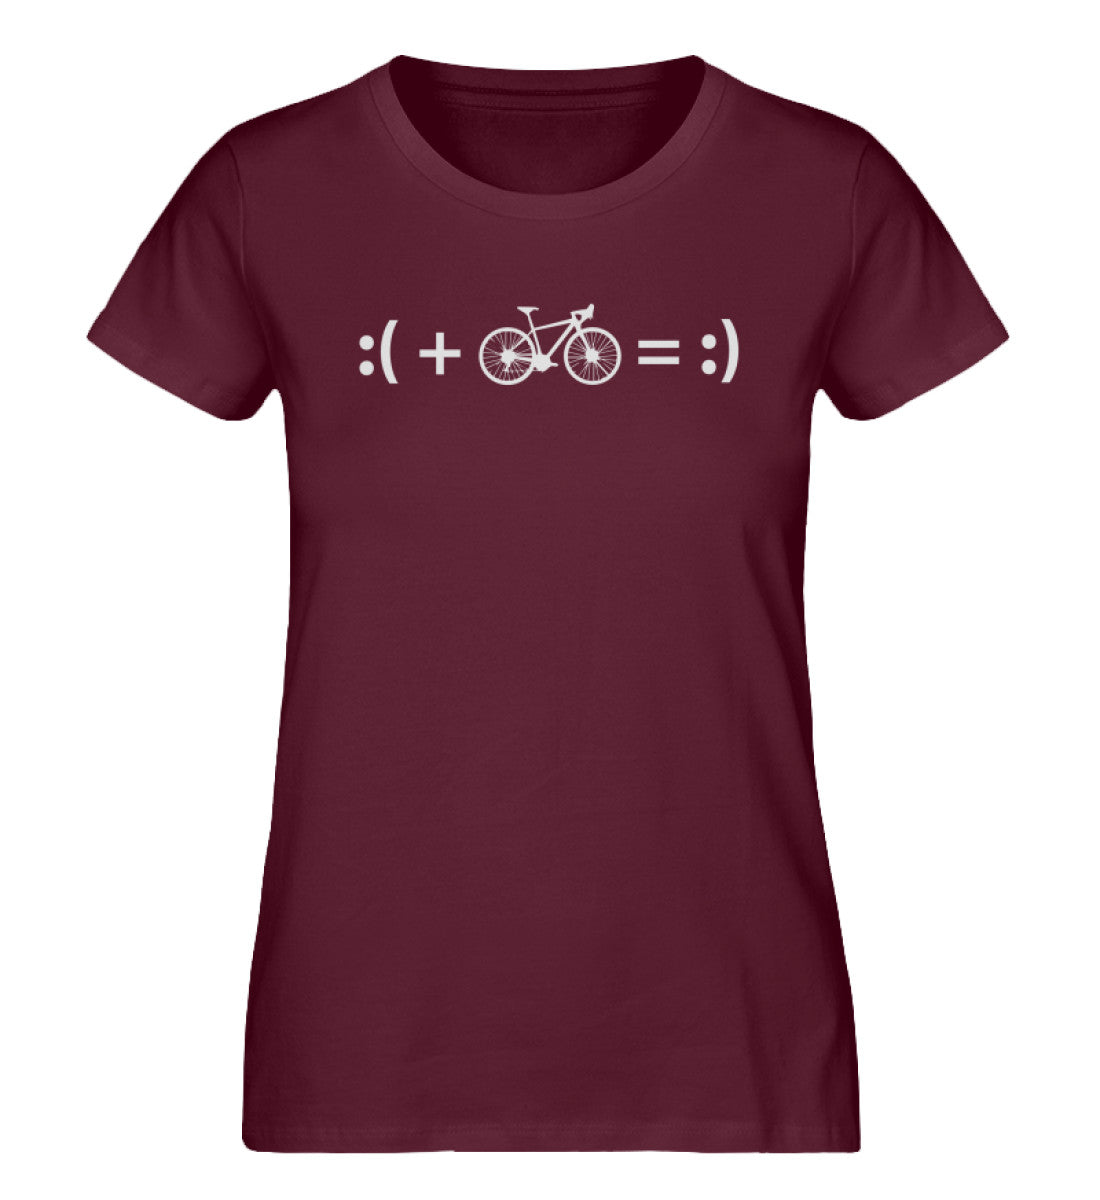 Radfahren macht glücklich - Damen Organic T-Shirt fahrrad Weinrot